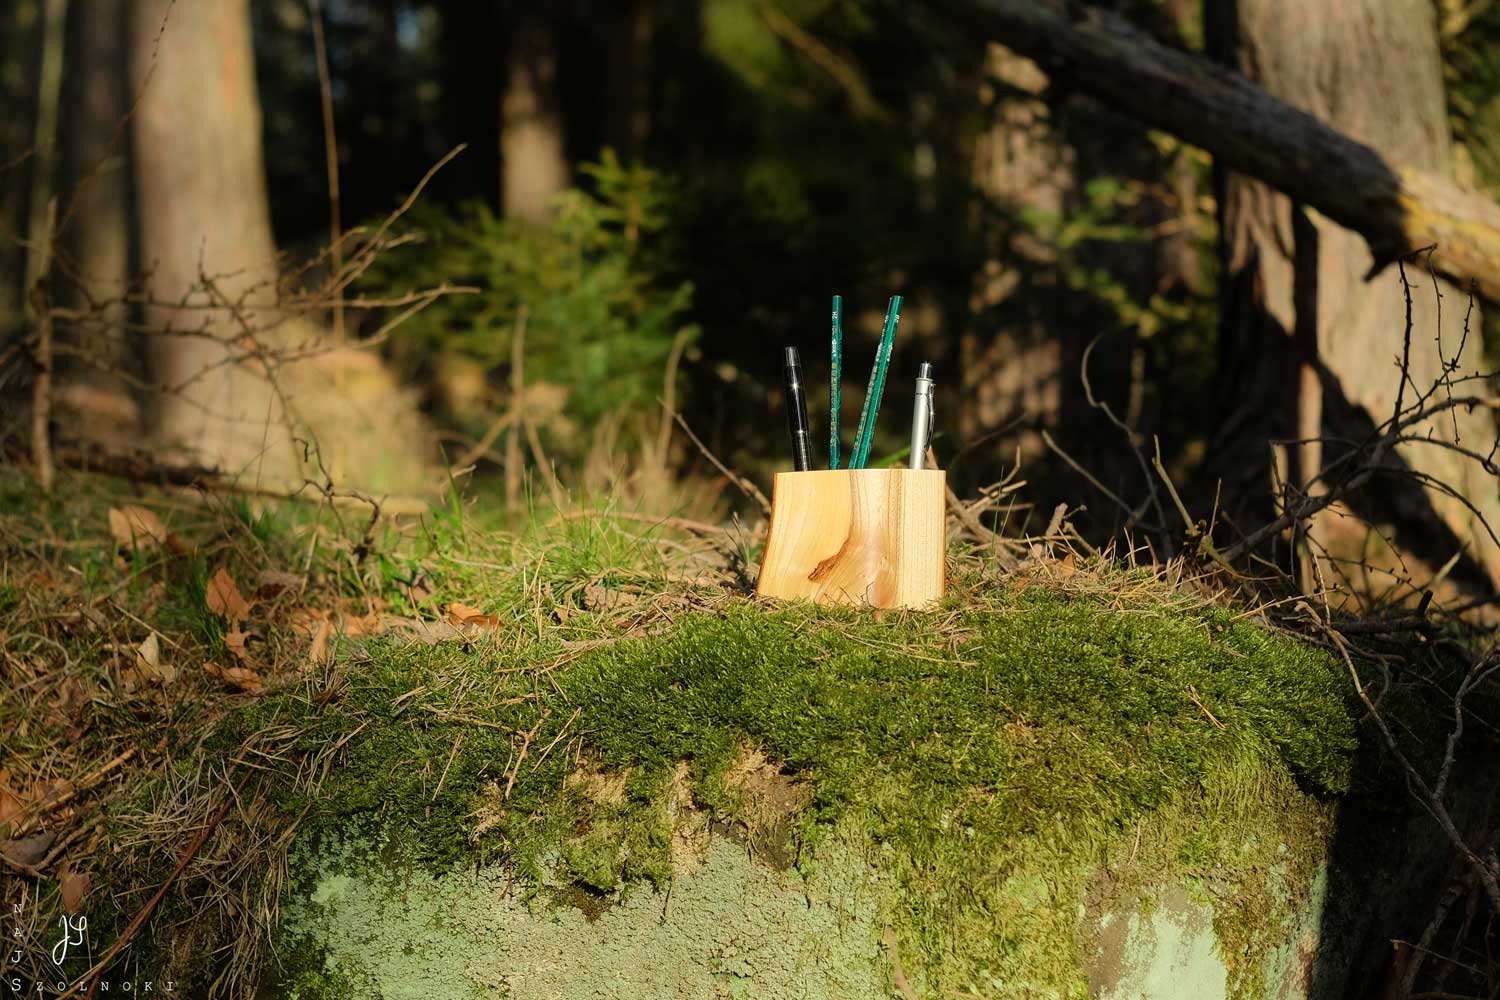 Holz-Stiftehalter Stifthirt Nr. 29 sonnenbeschienen auf einem Mooskissen im Wald, Bäume, Unterholz und dunkle Schatten im Hintergrund.